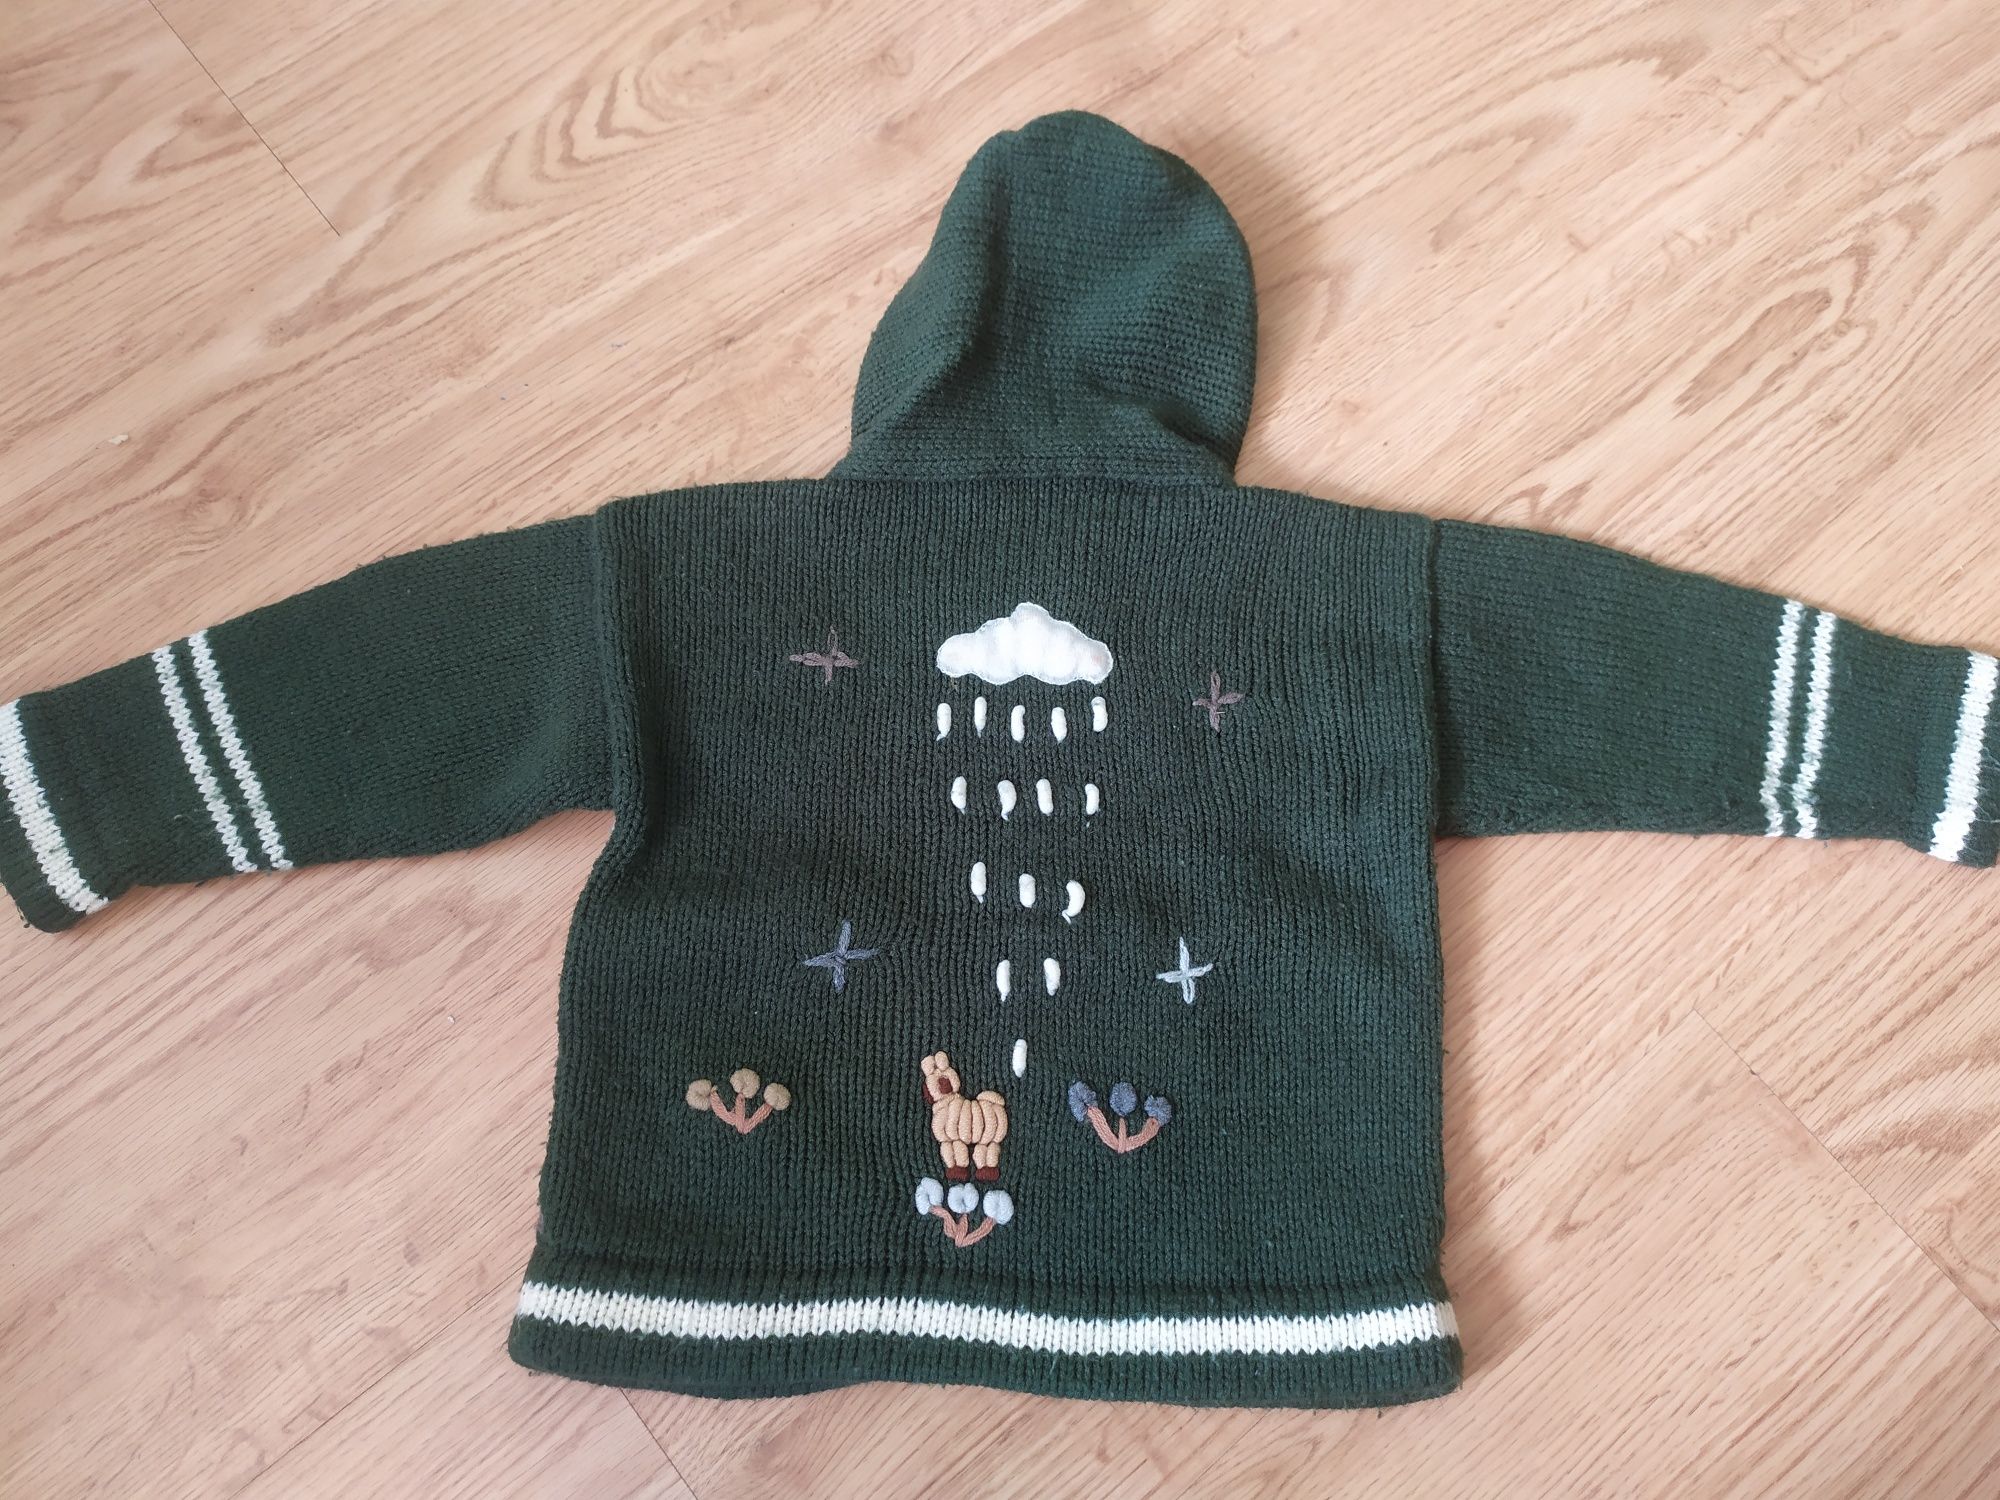 Oryginalny sweterek dla dziecka